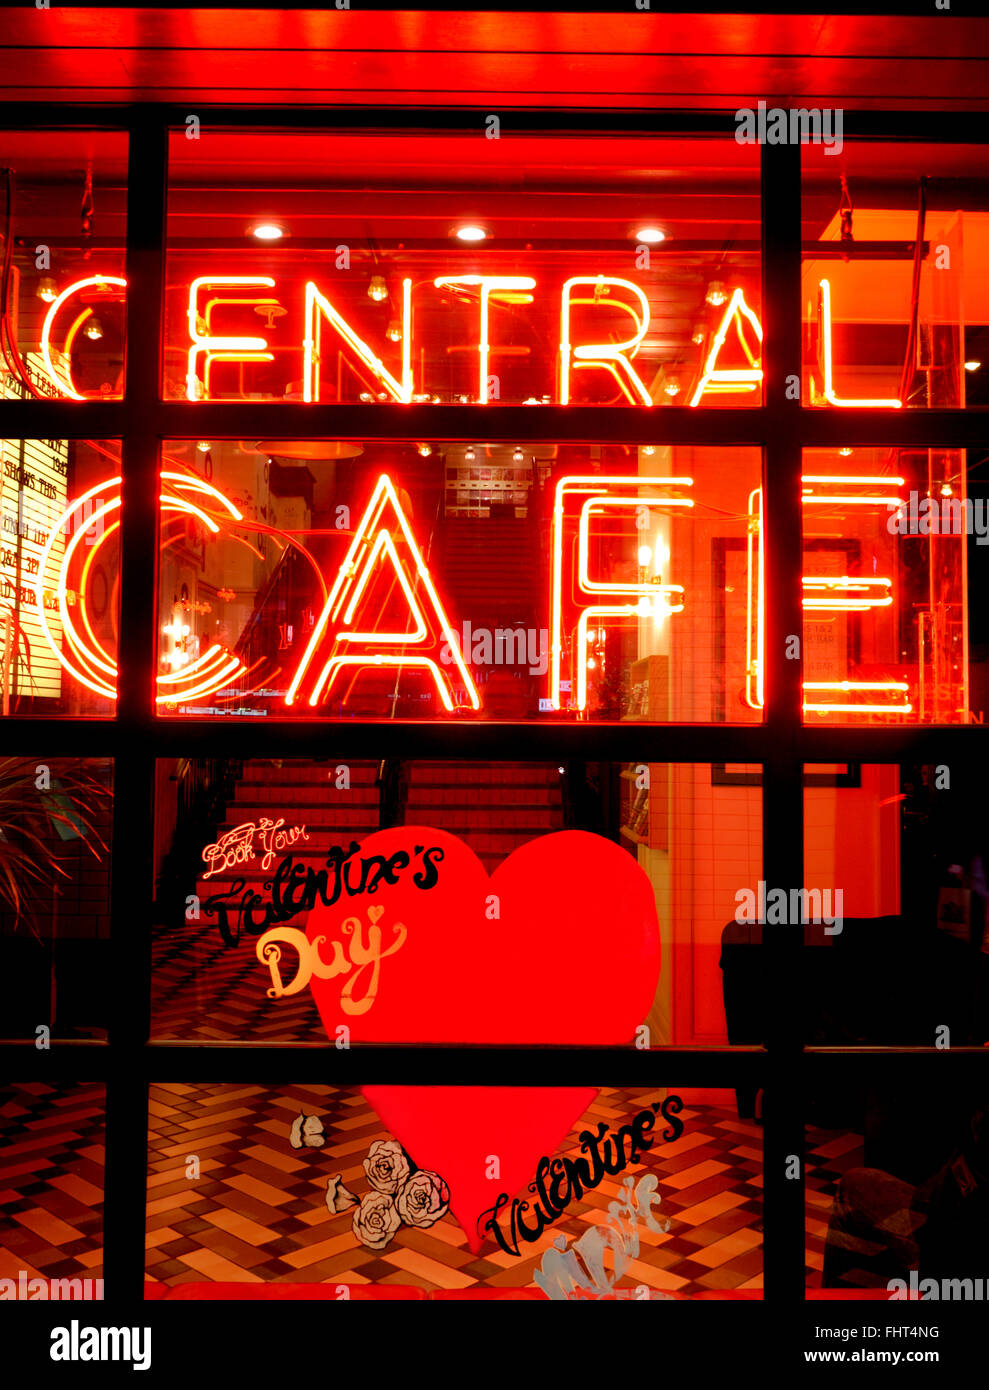 Style entrepôt au néon Café Central éclairé la nuit avec Valentines Day promotion spéciale Shaftesbury Avenue London UK Banque D'Images